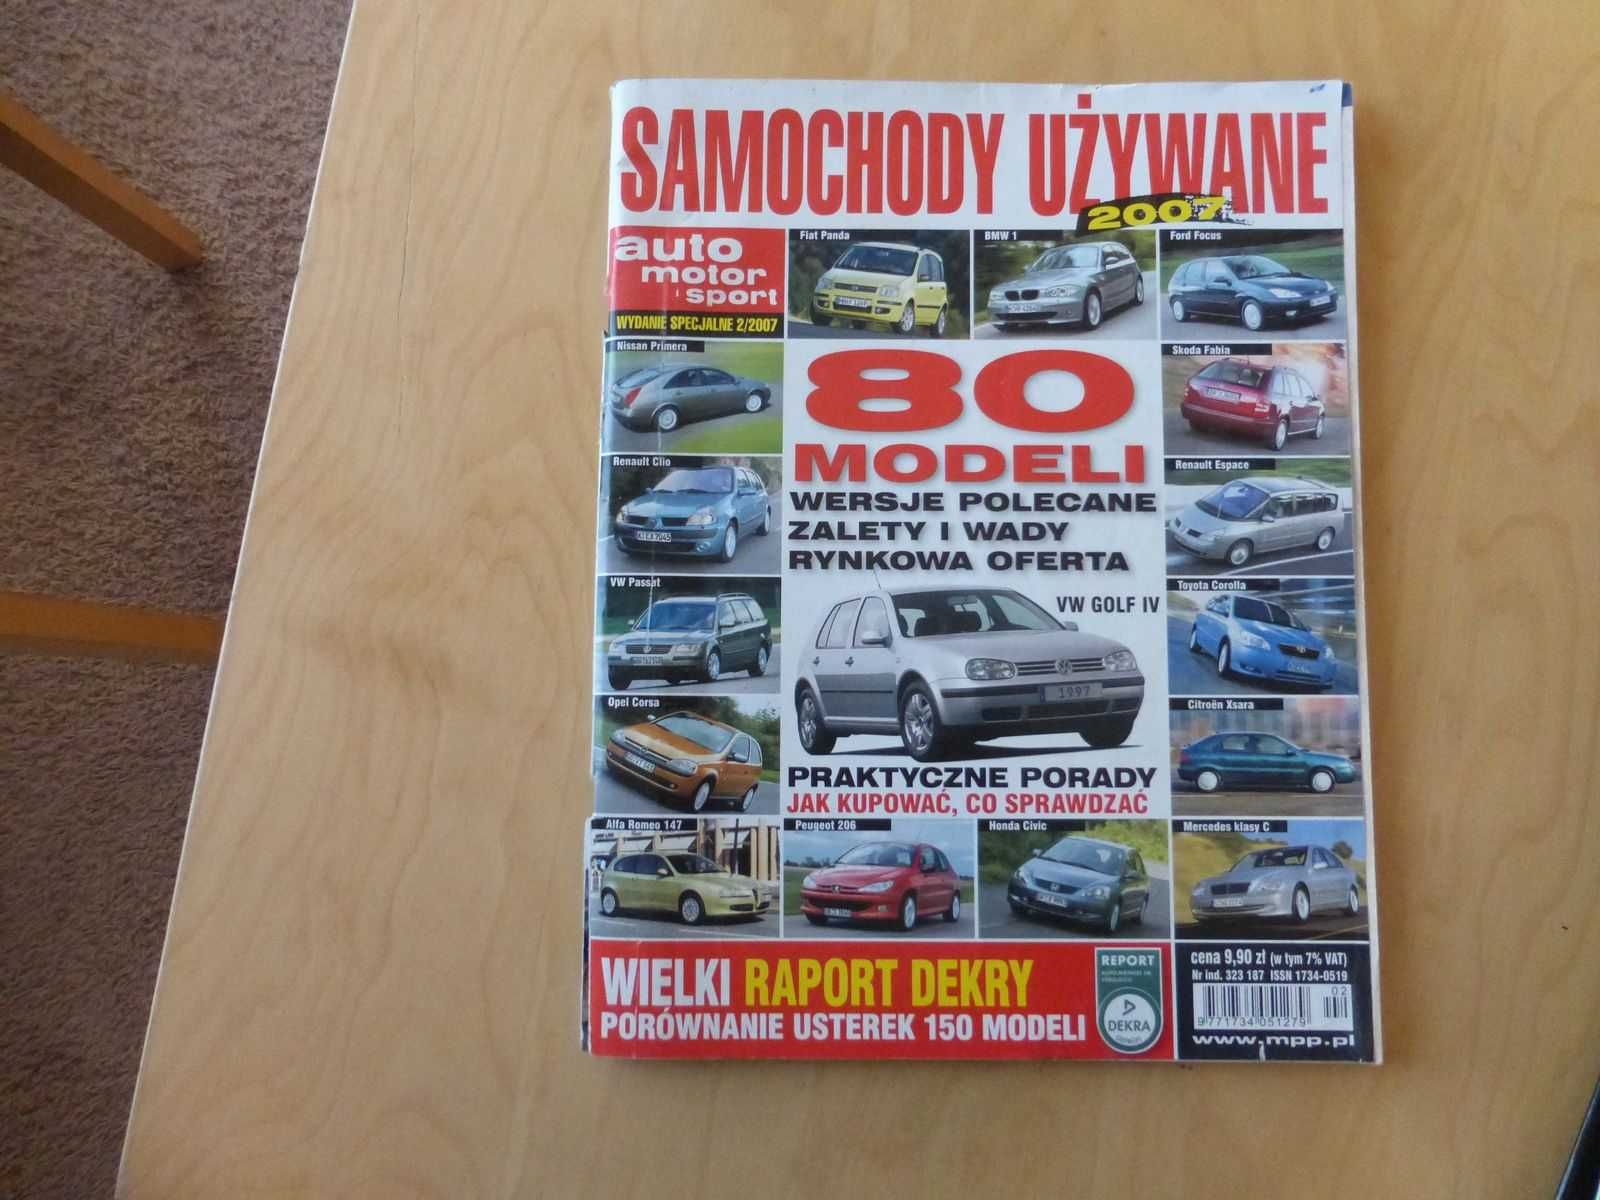 Katalog Samochody Używane 2007 wydanie auto motor i sport